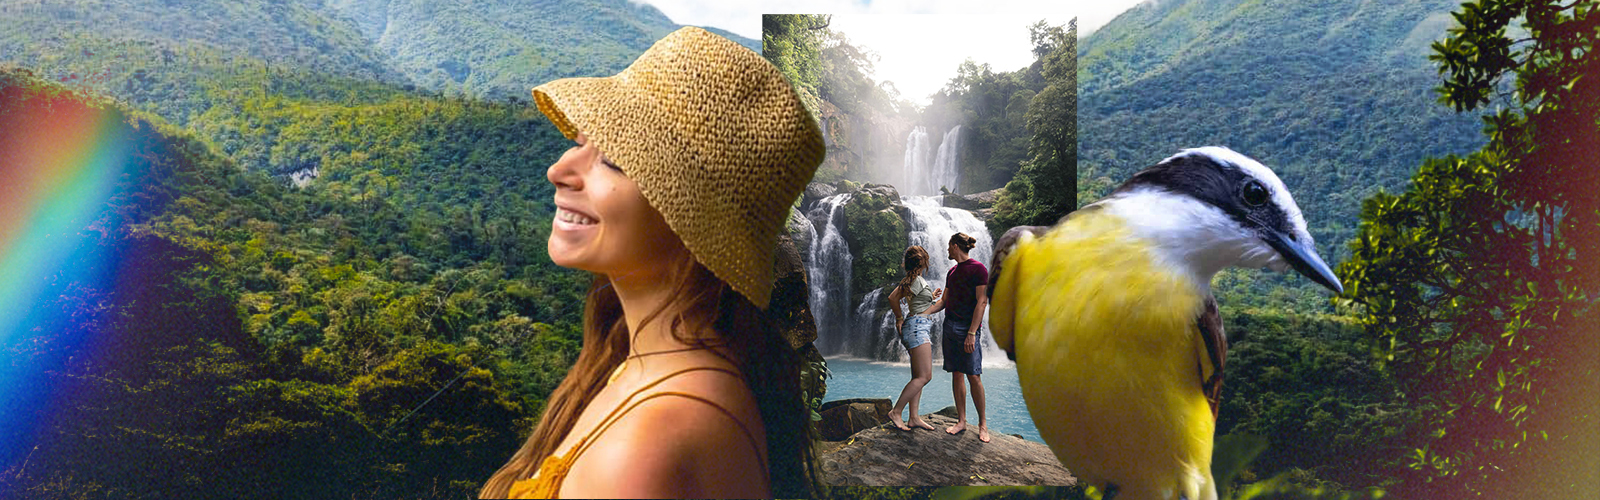 Costa Rica Adventure Guide